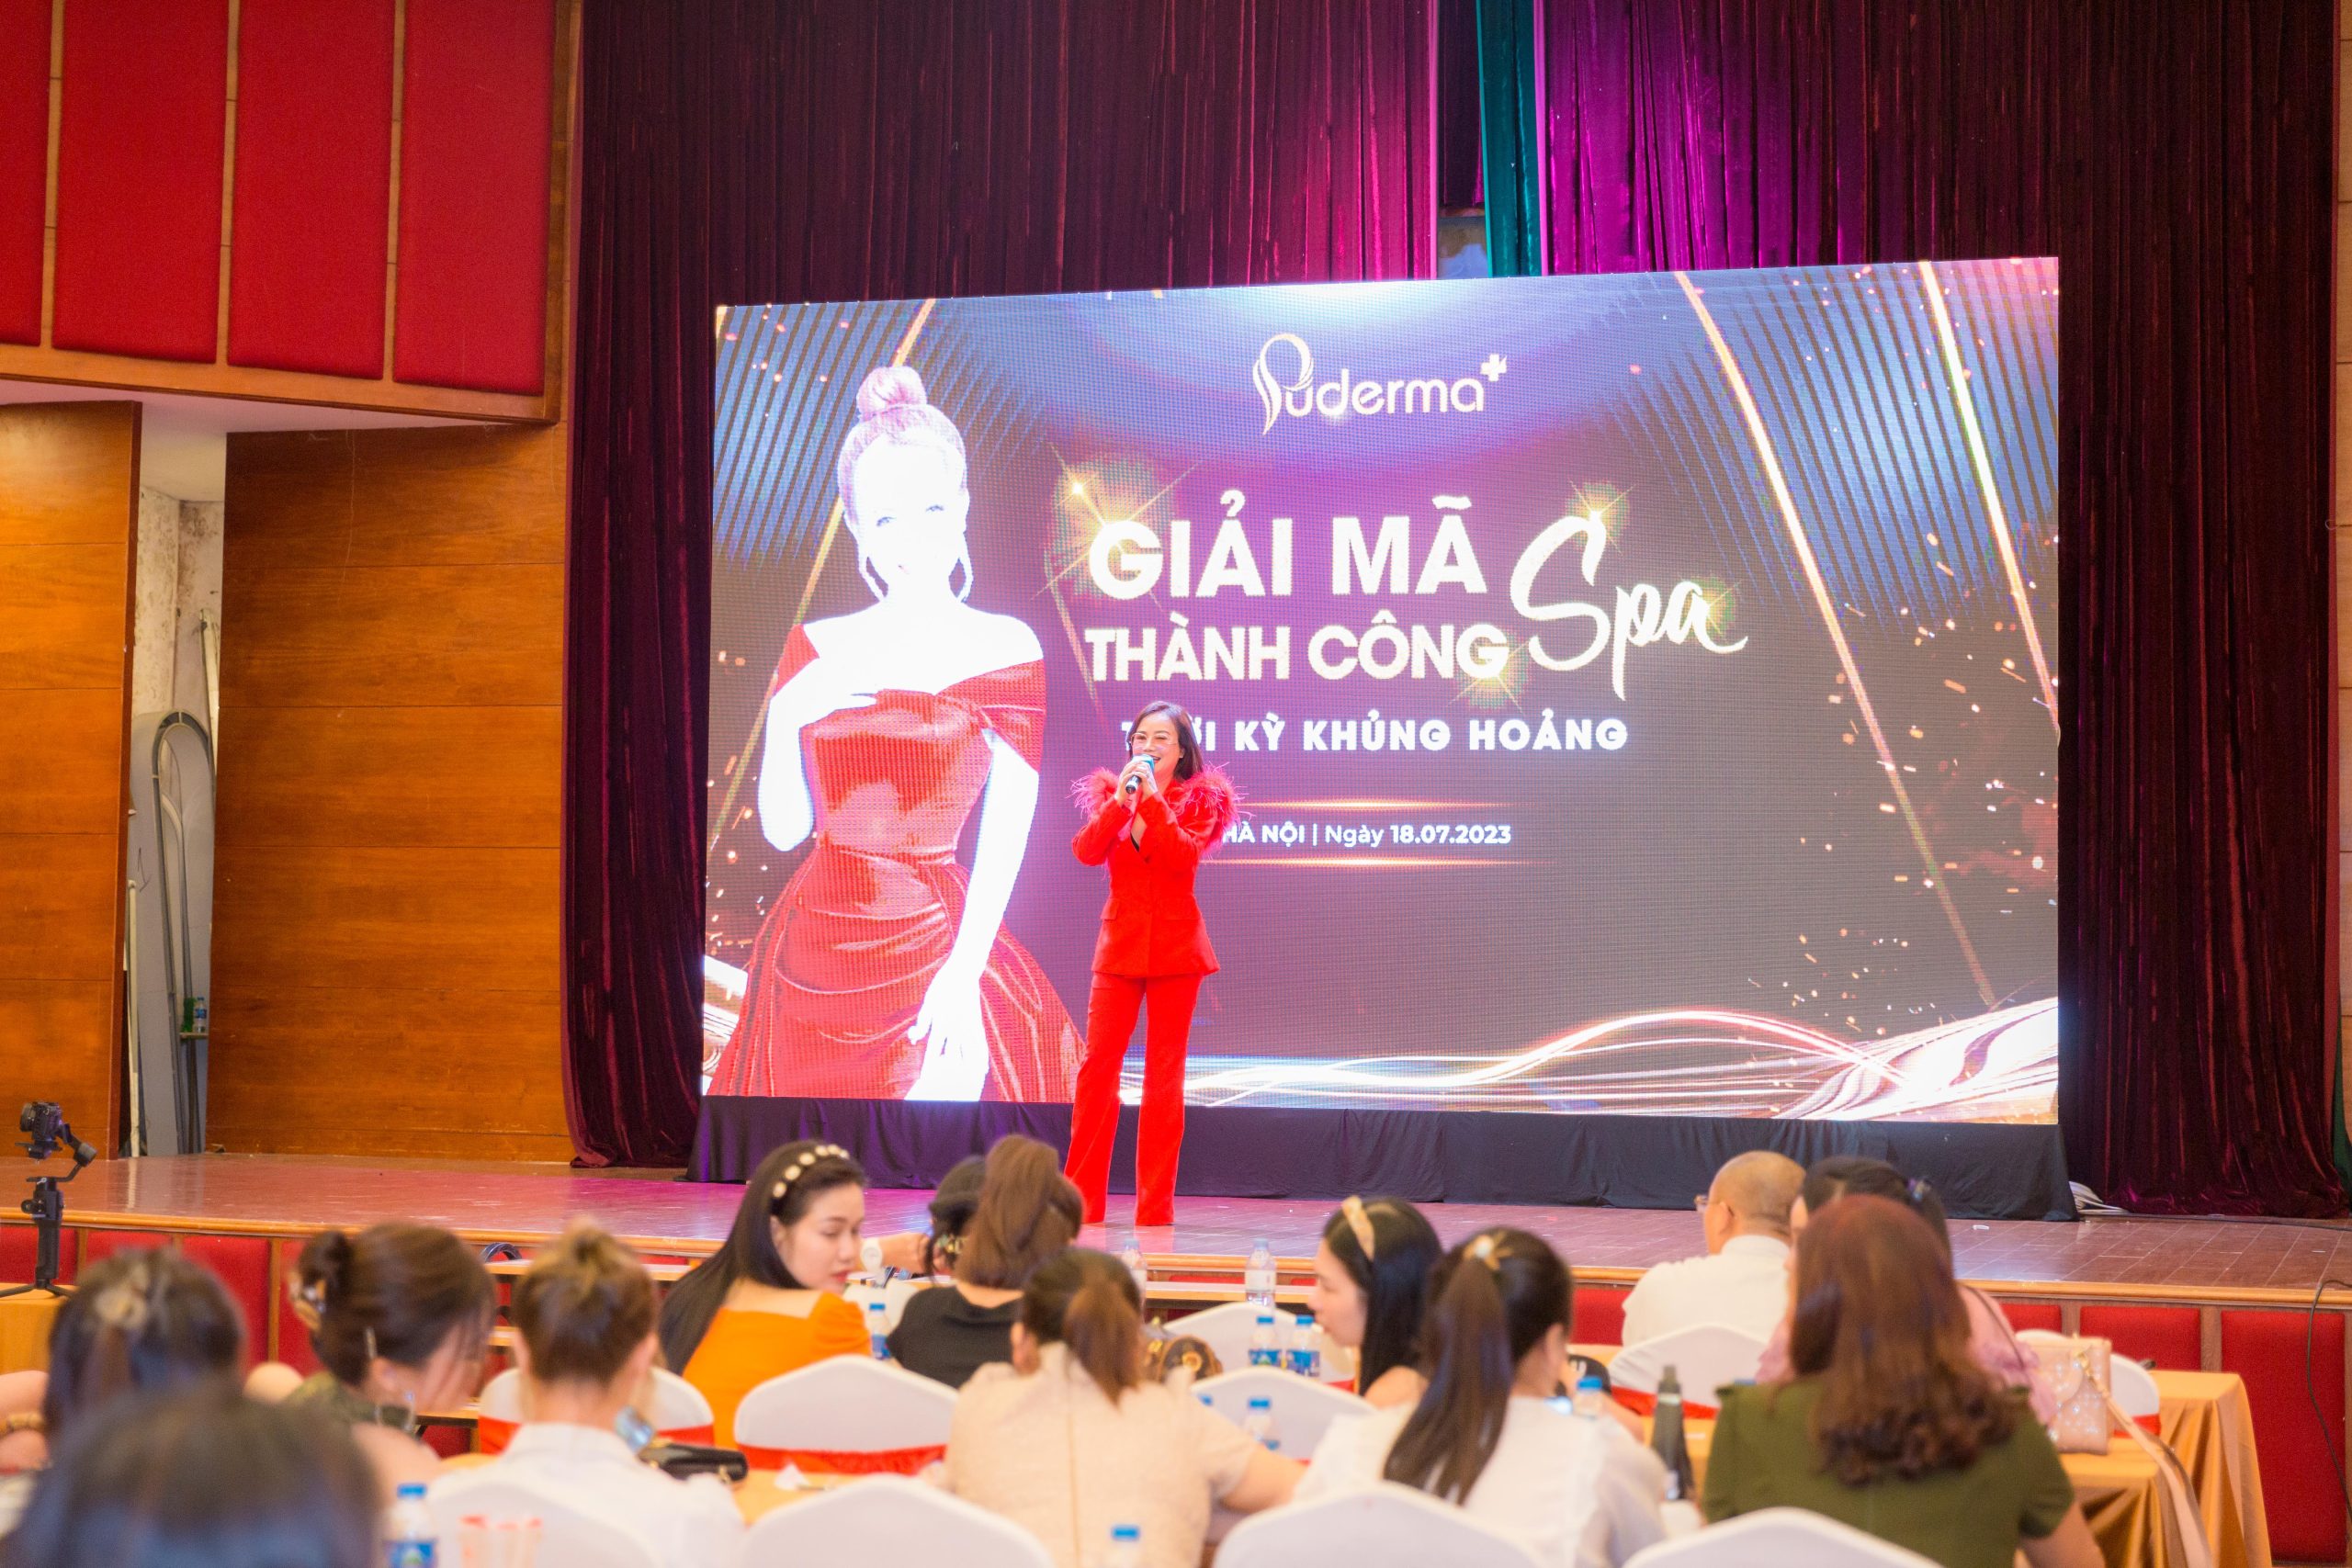 Chúc mừng sự kiện “Giải Mã Thành Công Spa Thời Kỳ Khủng Hoảng” tại Hà Nội diễn ra  thành công rực rỡ !